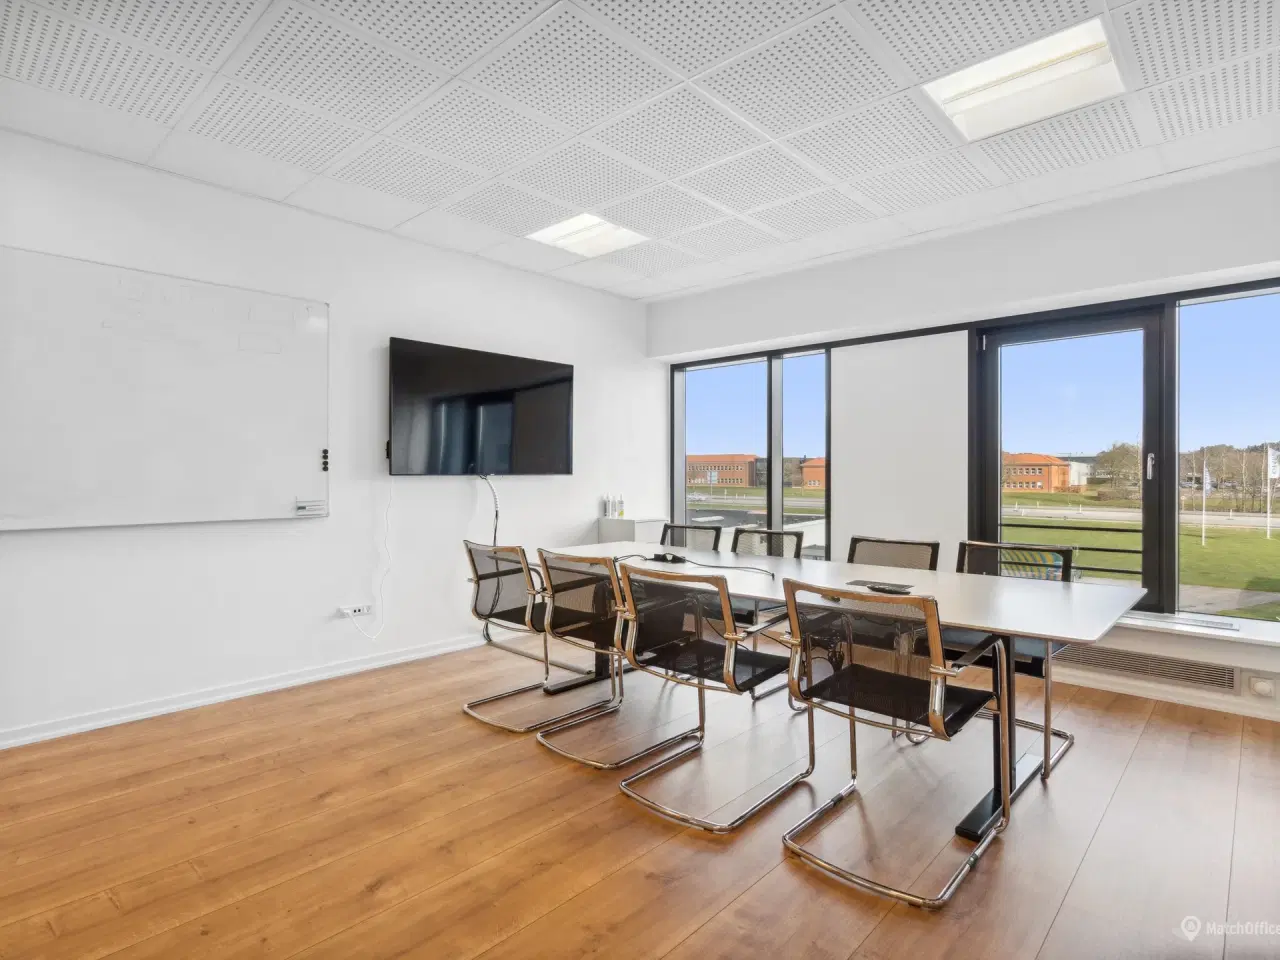 Billede 10 - 342 m² kontor beliggende i meget præsentabel kontorejendom